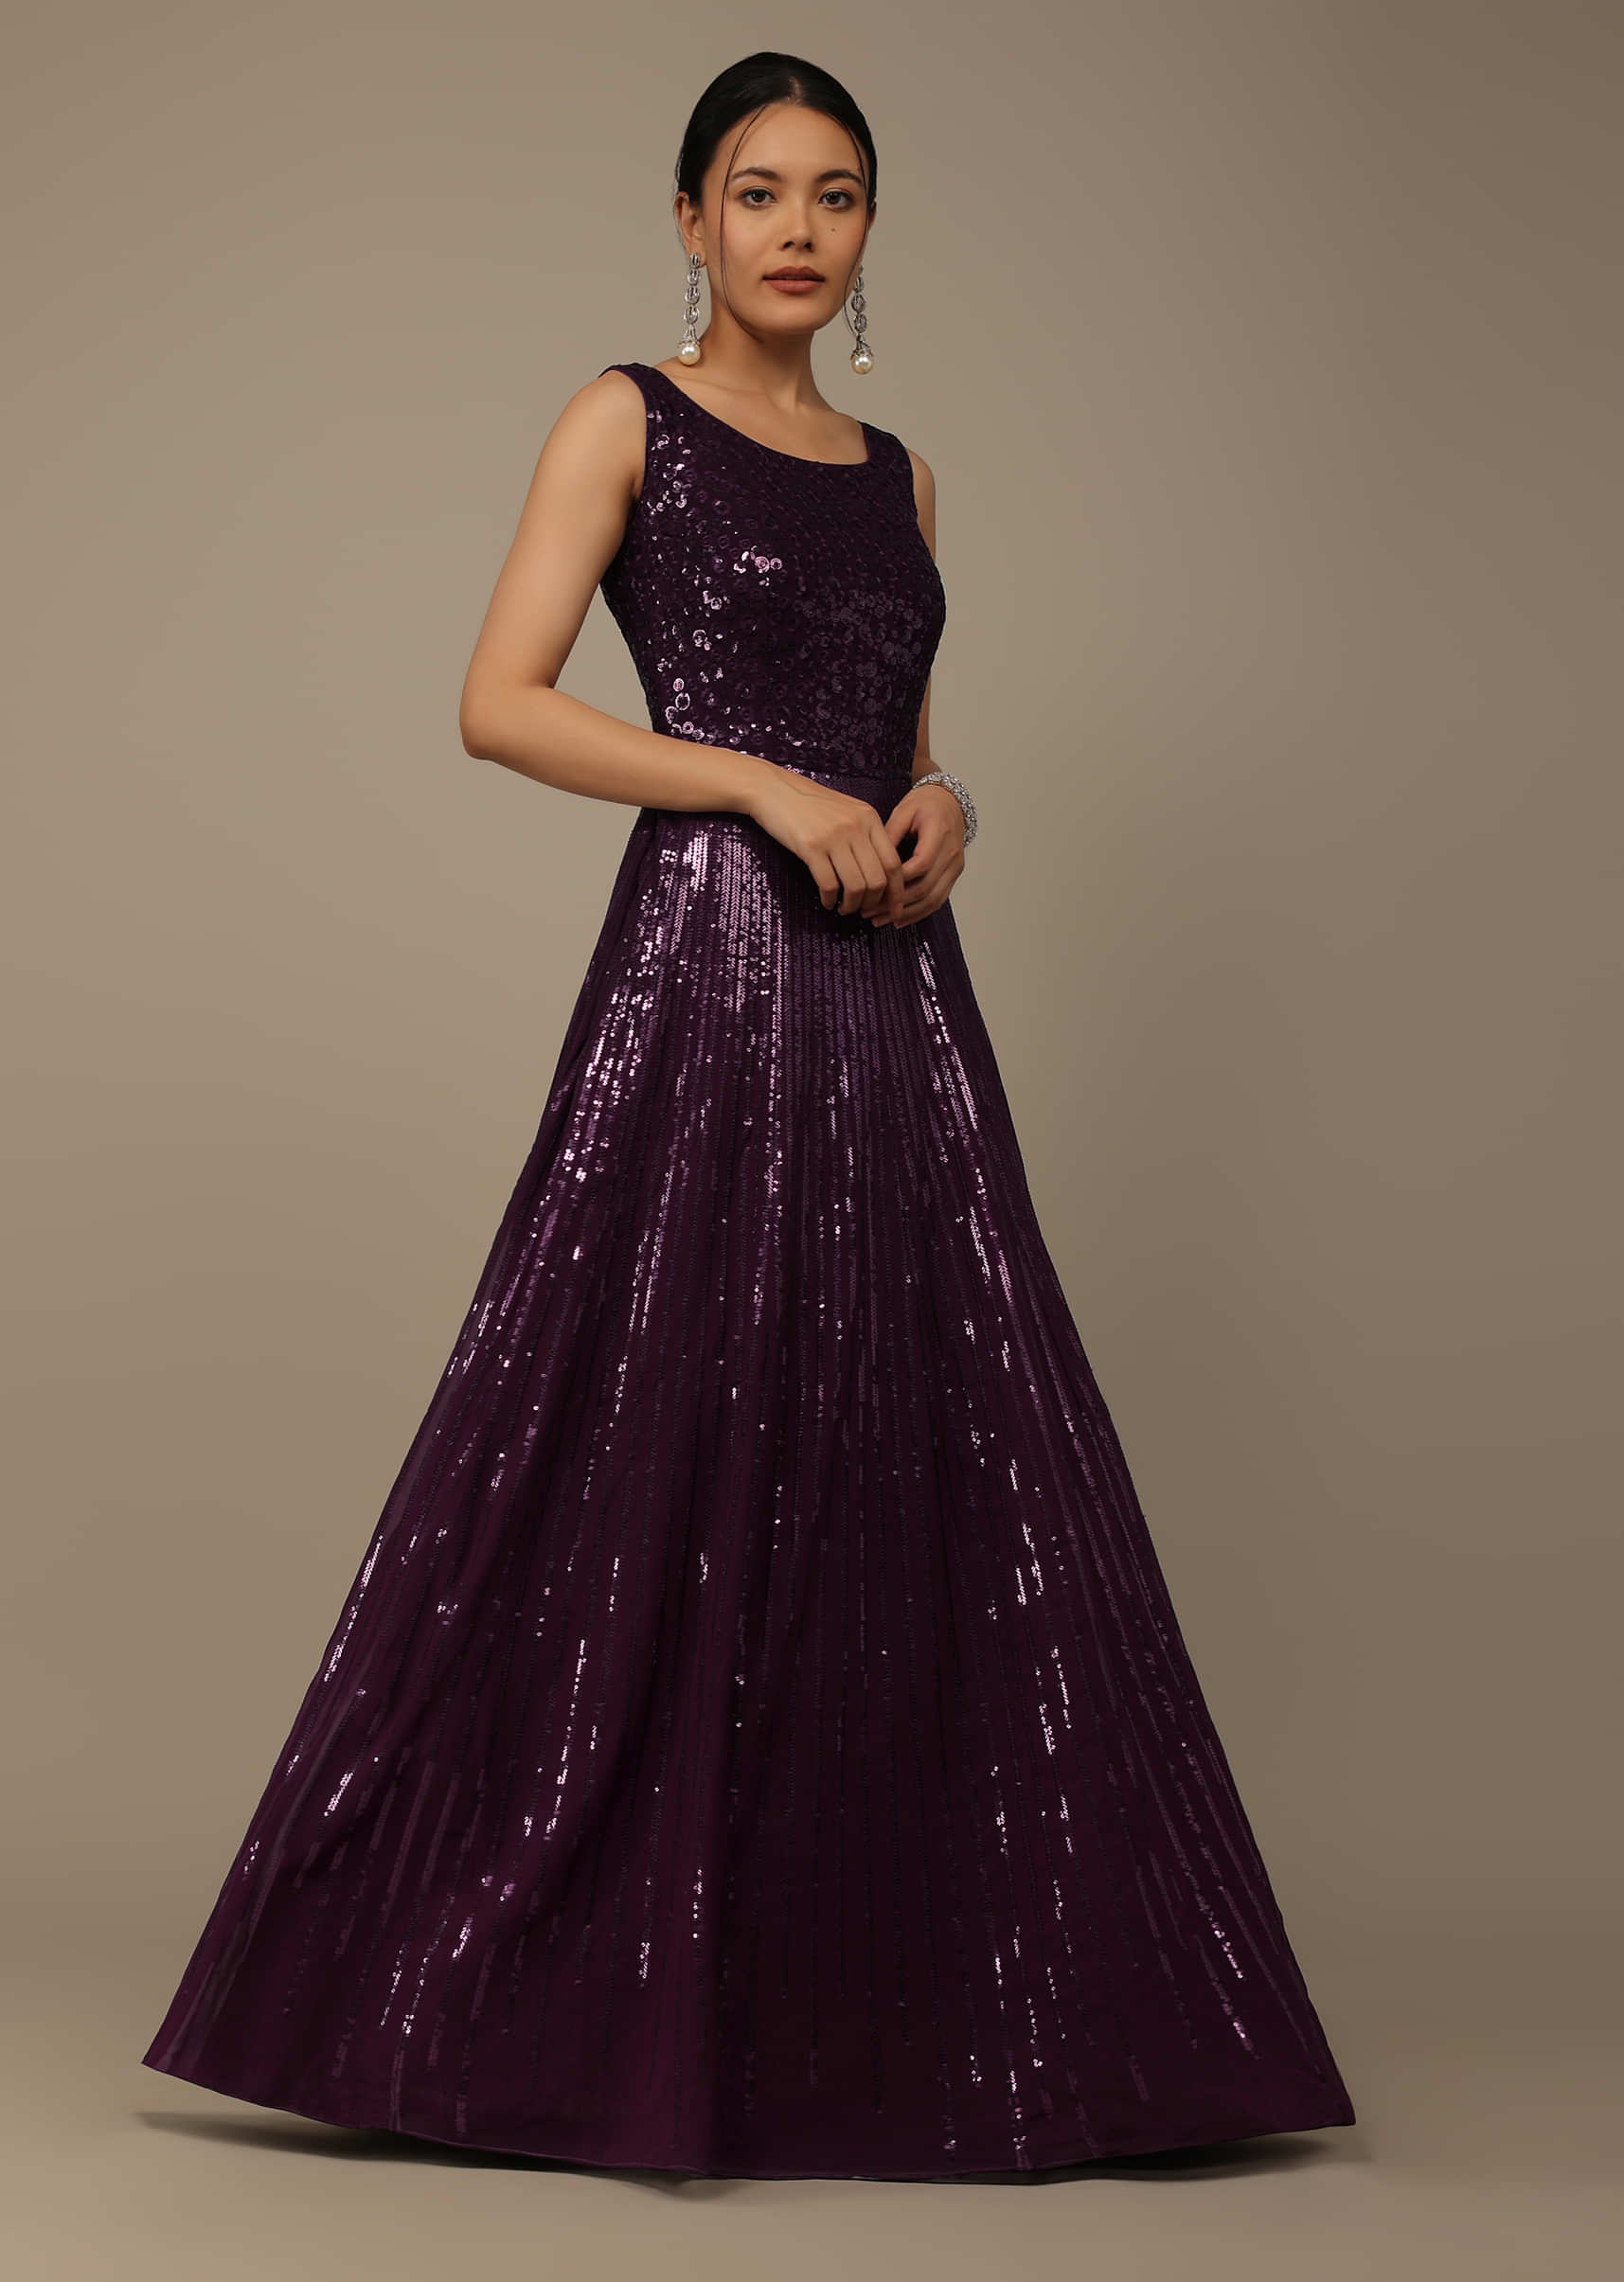 Plus Size Gowns Buy Plus Size Gowns Online  Designer Plus Size Dresses   Kalki Fashion